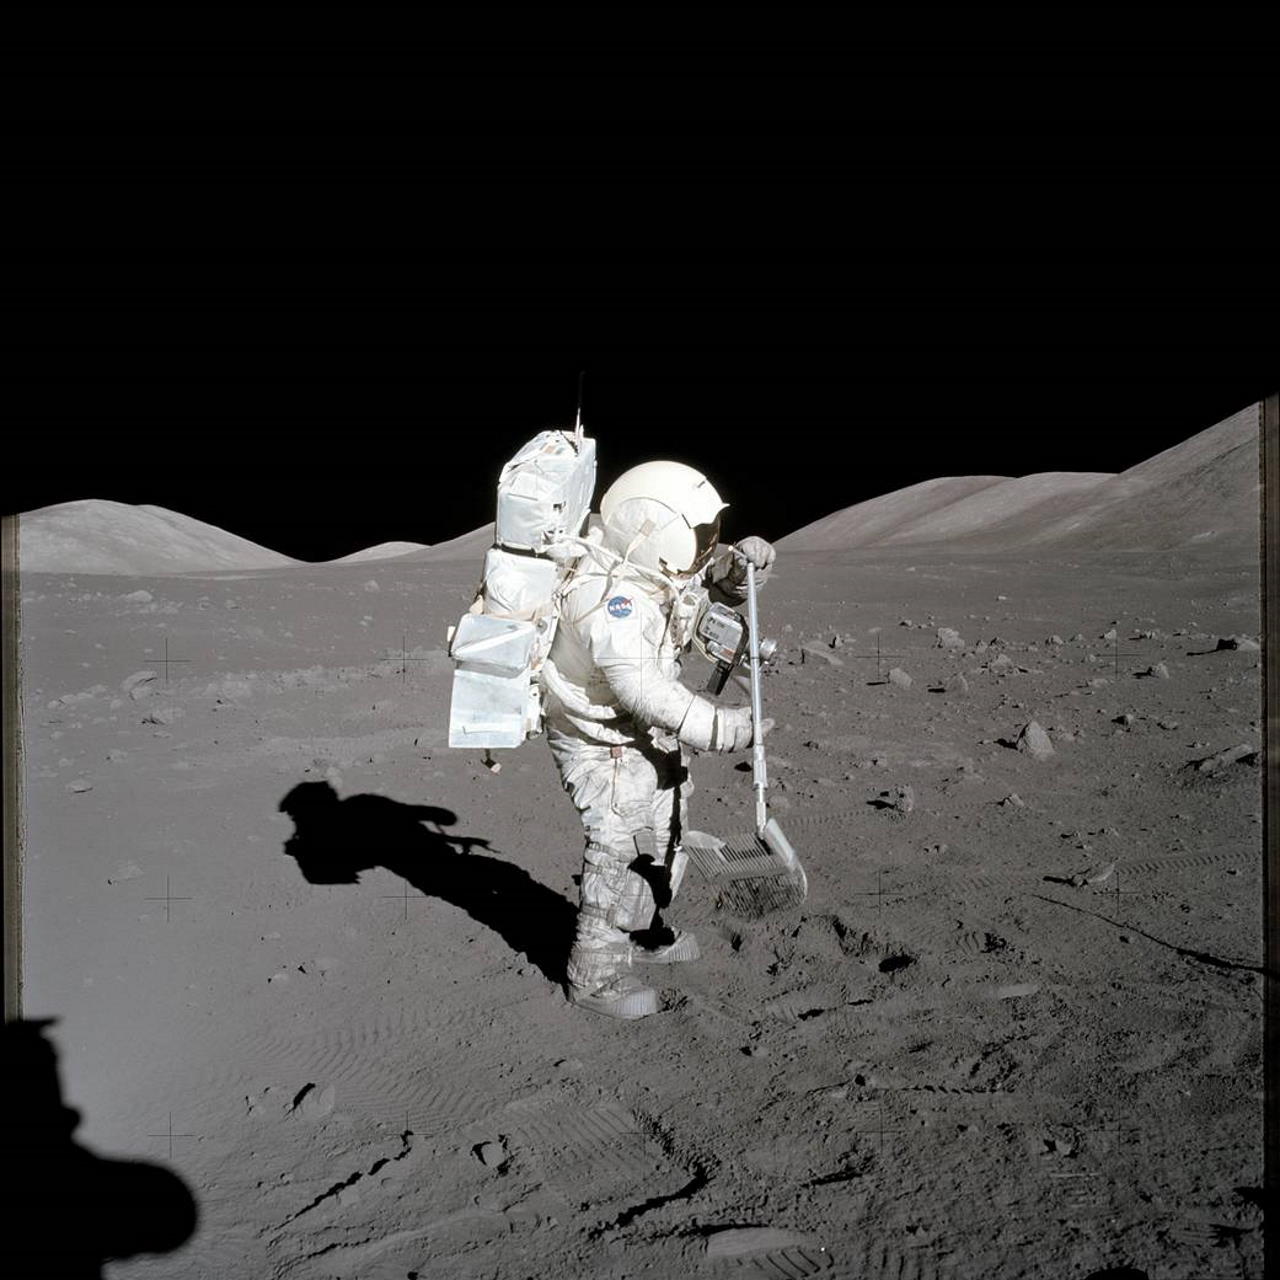 Гаррісон Шмітт збирає зразки за допомогою граблів. Автор фото  —  Юджин Сернан. Eugene Cernan / NASA